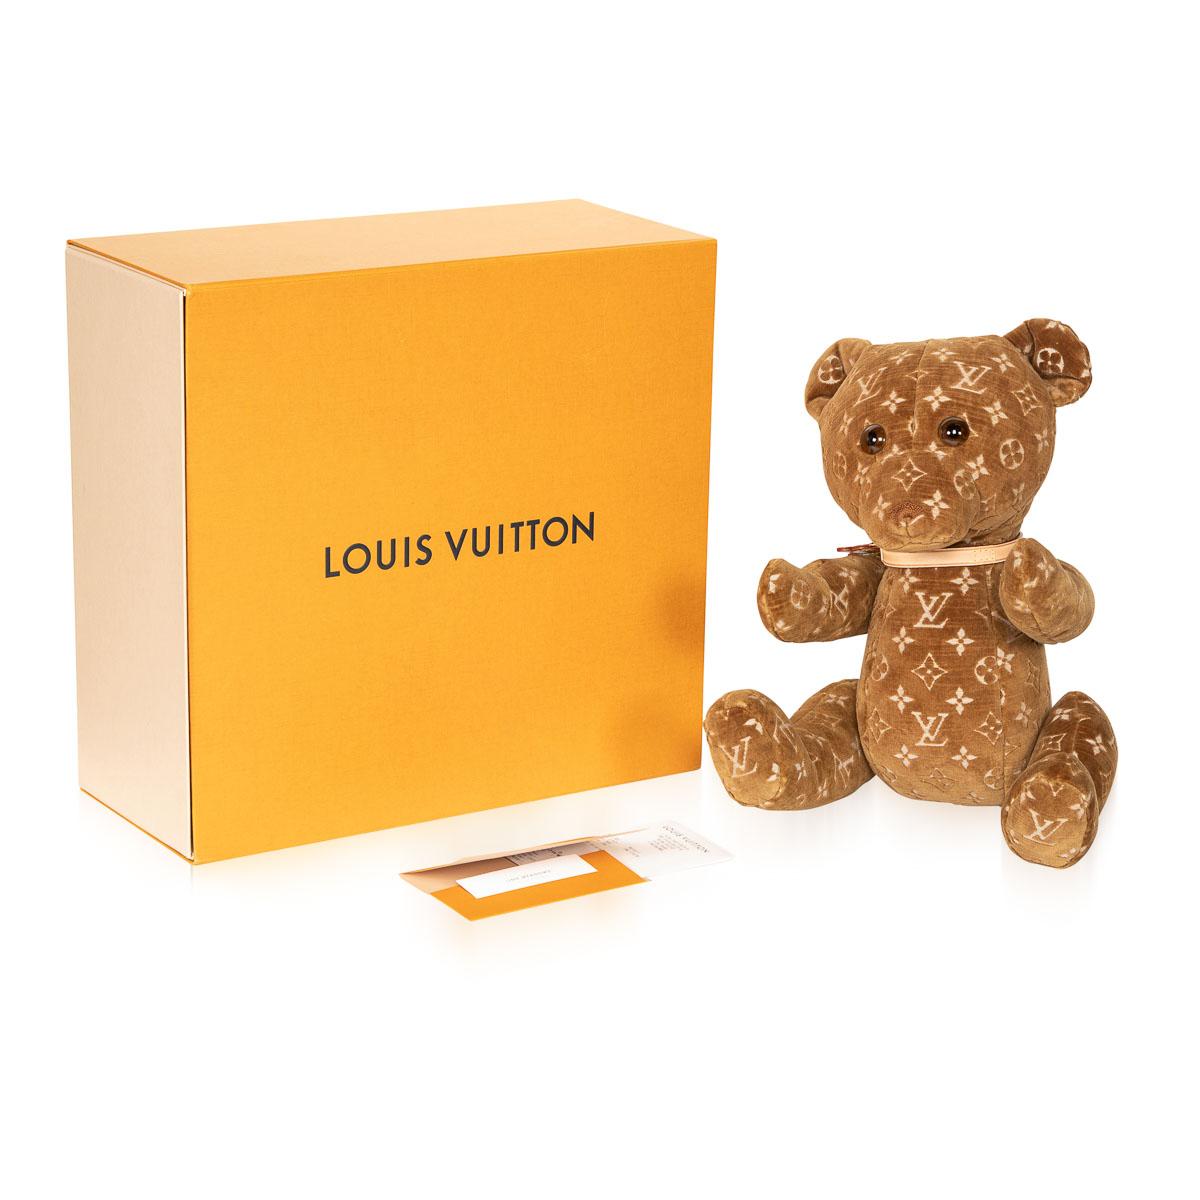 Cuir Rare Édition Limitée Louis Vuitton 